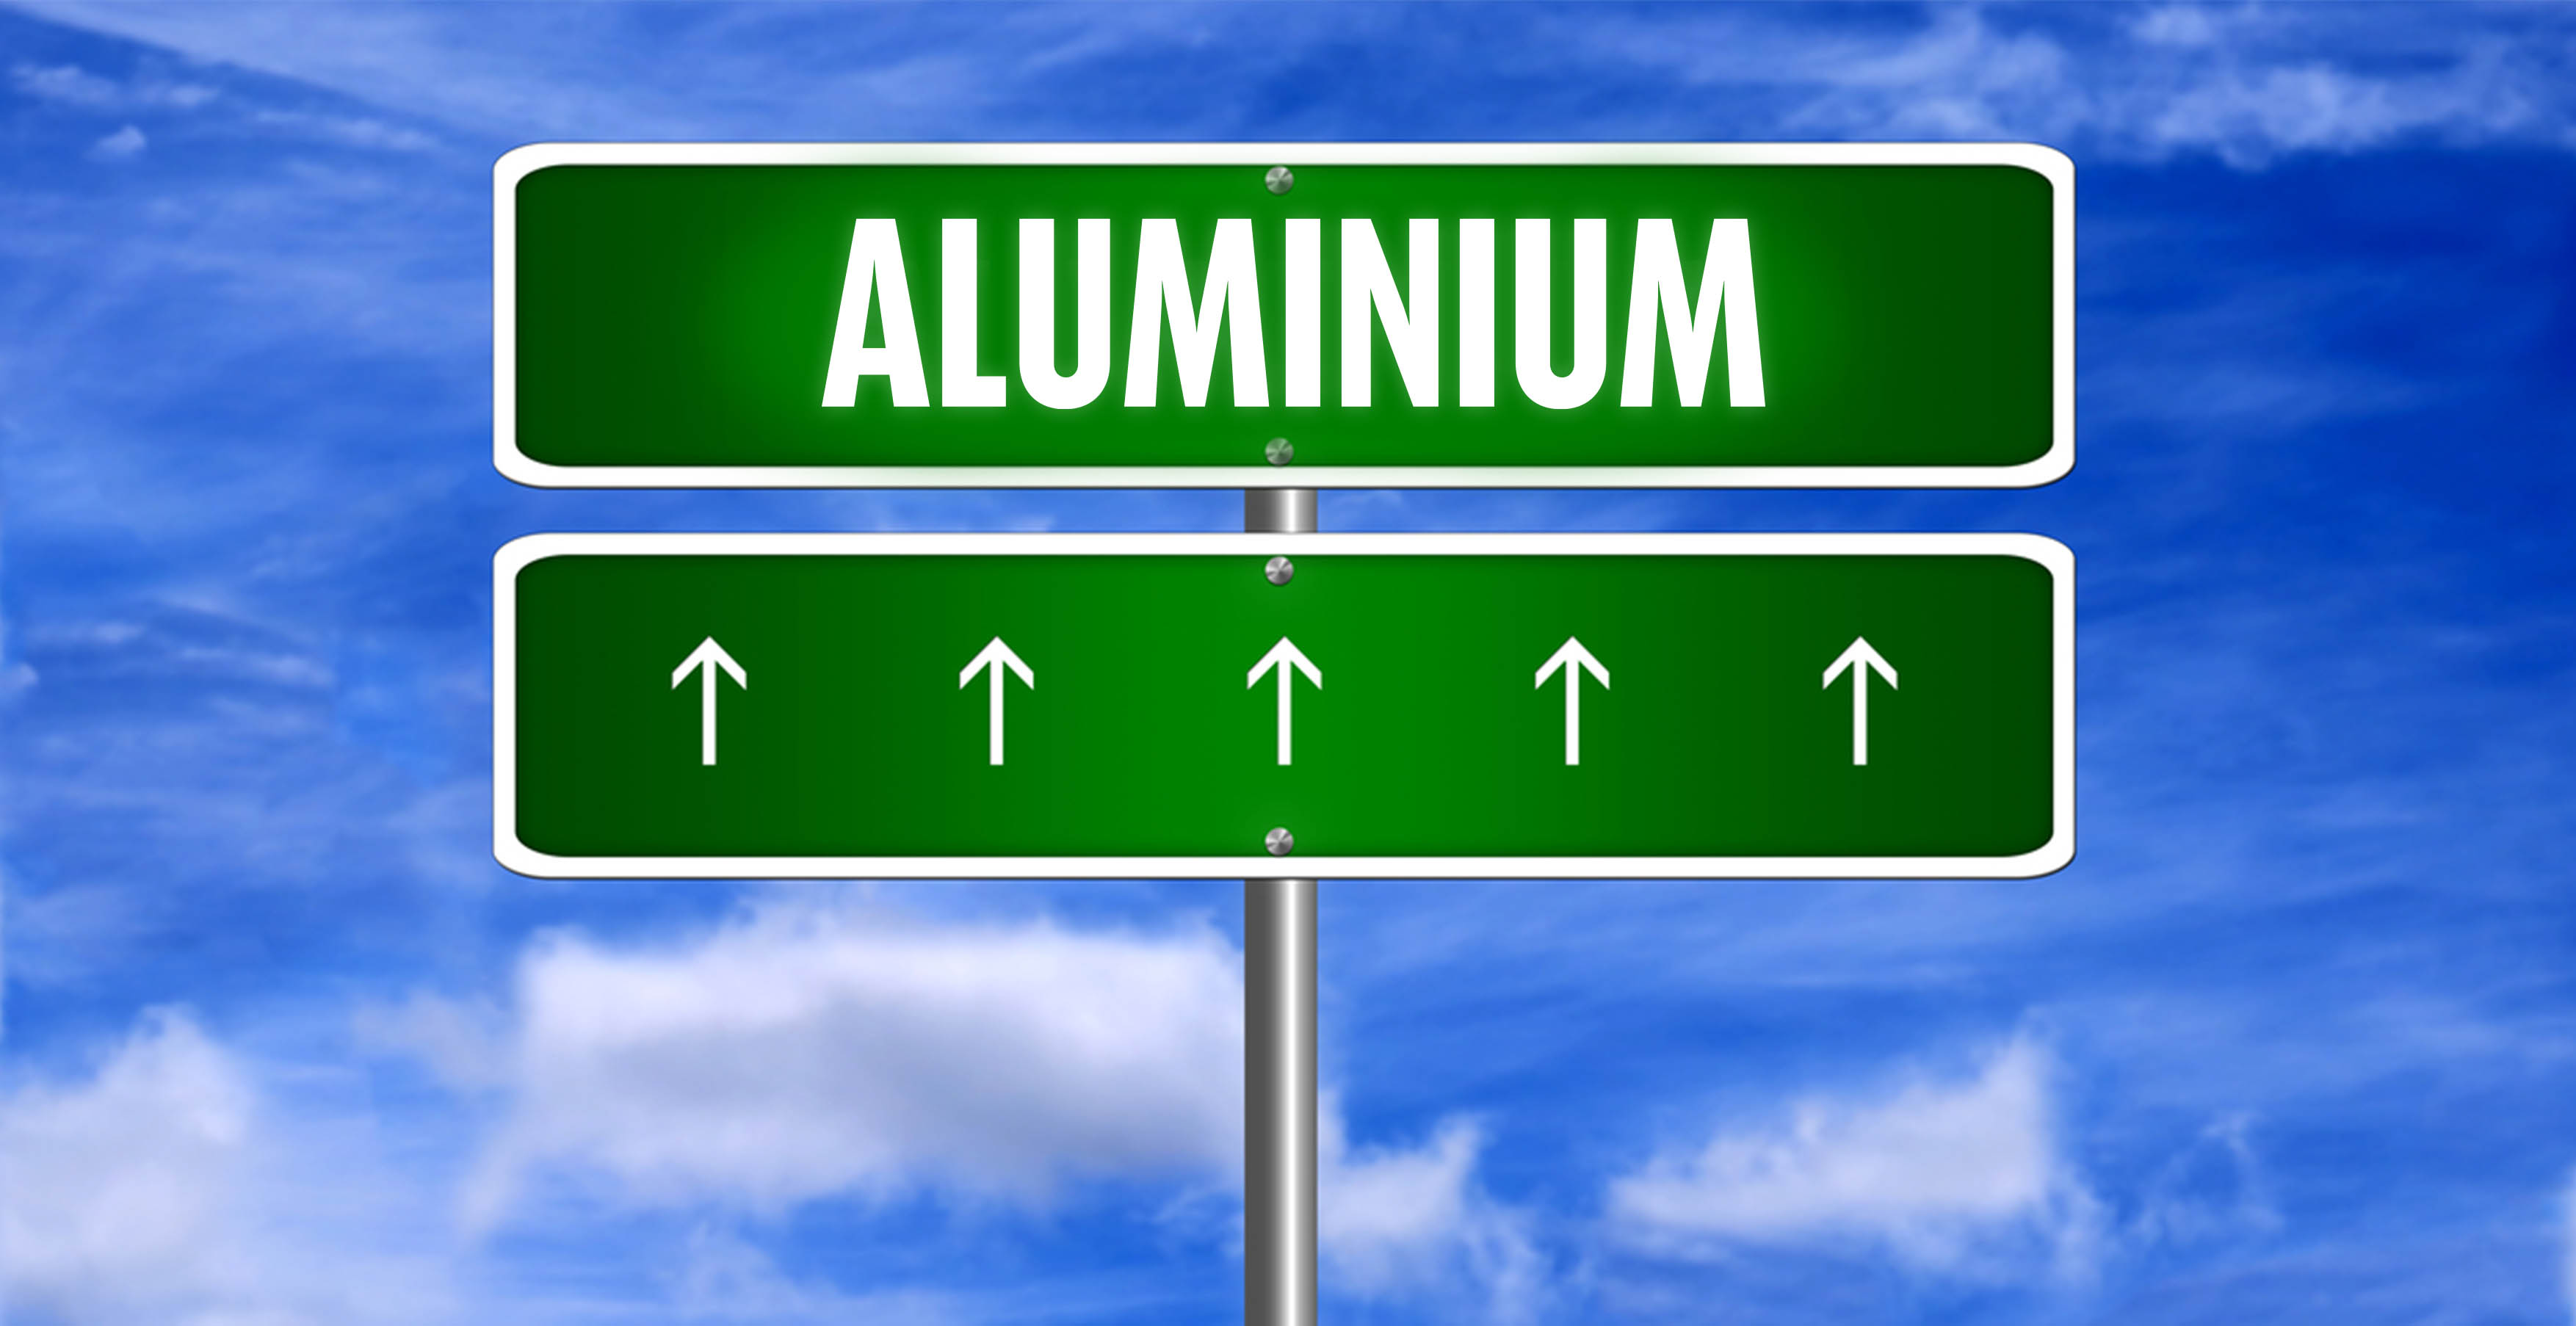 Sterke vraag en verminderde capaciteit van Aluminium